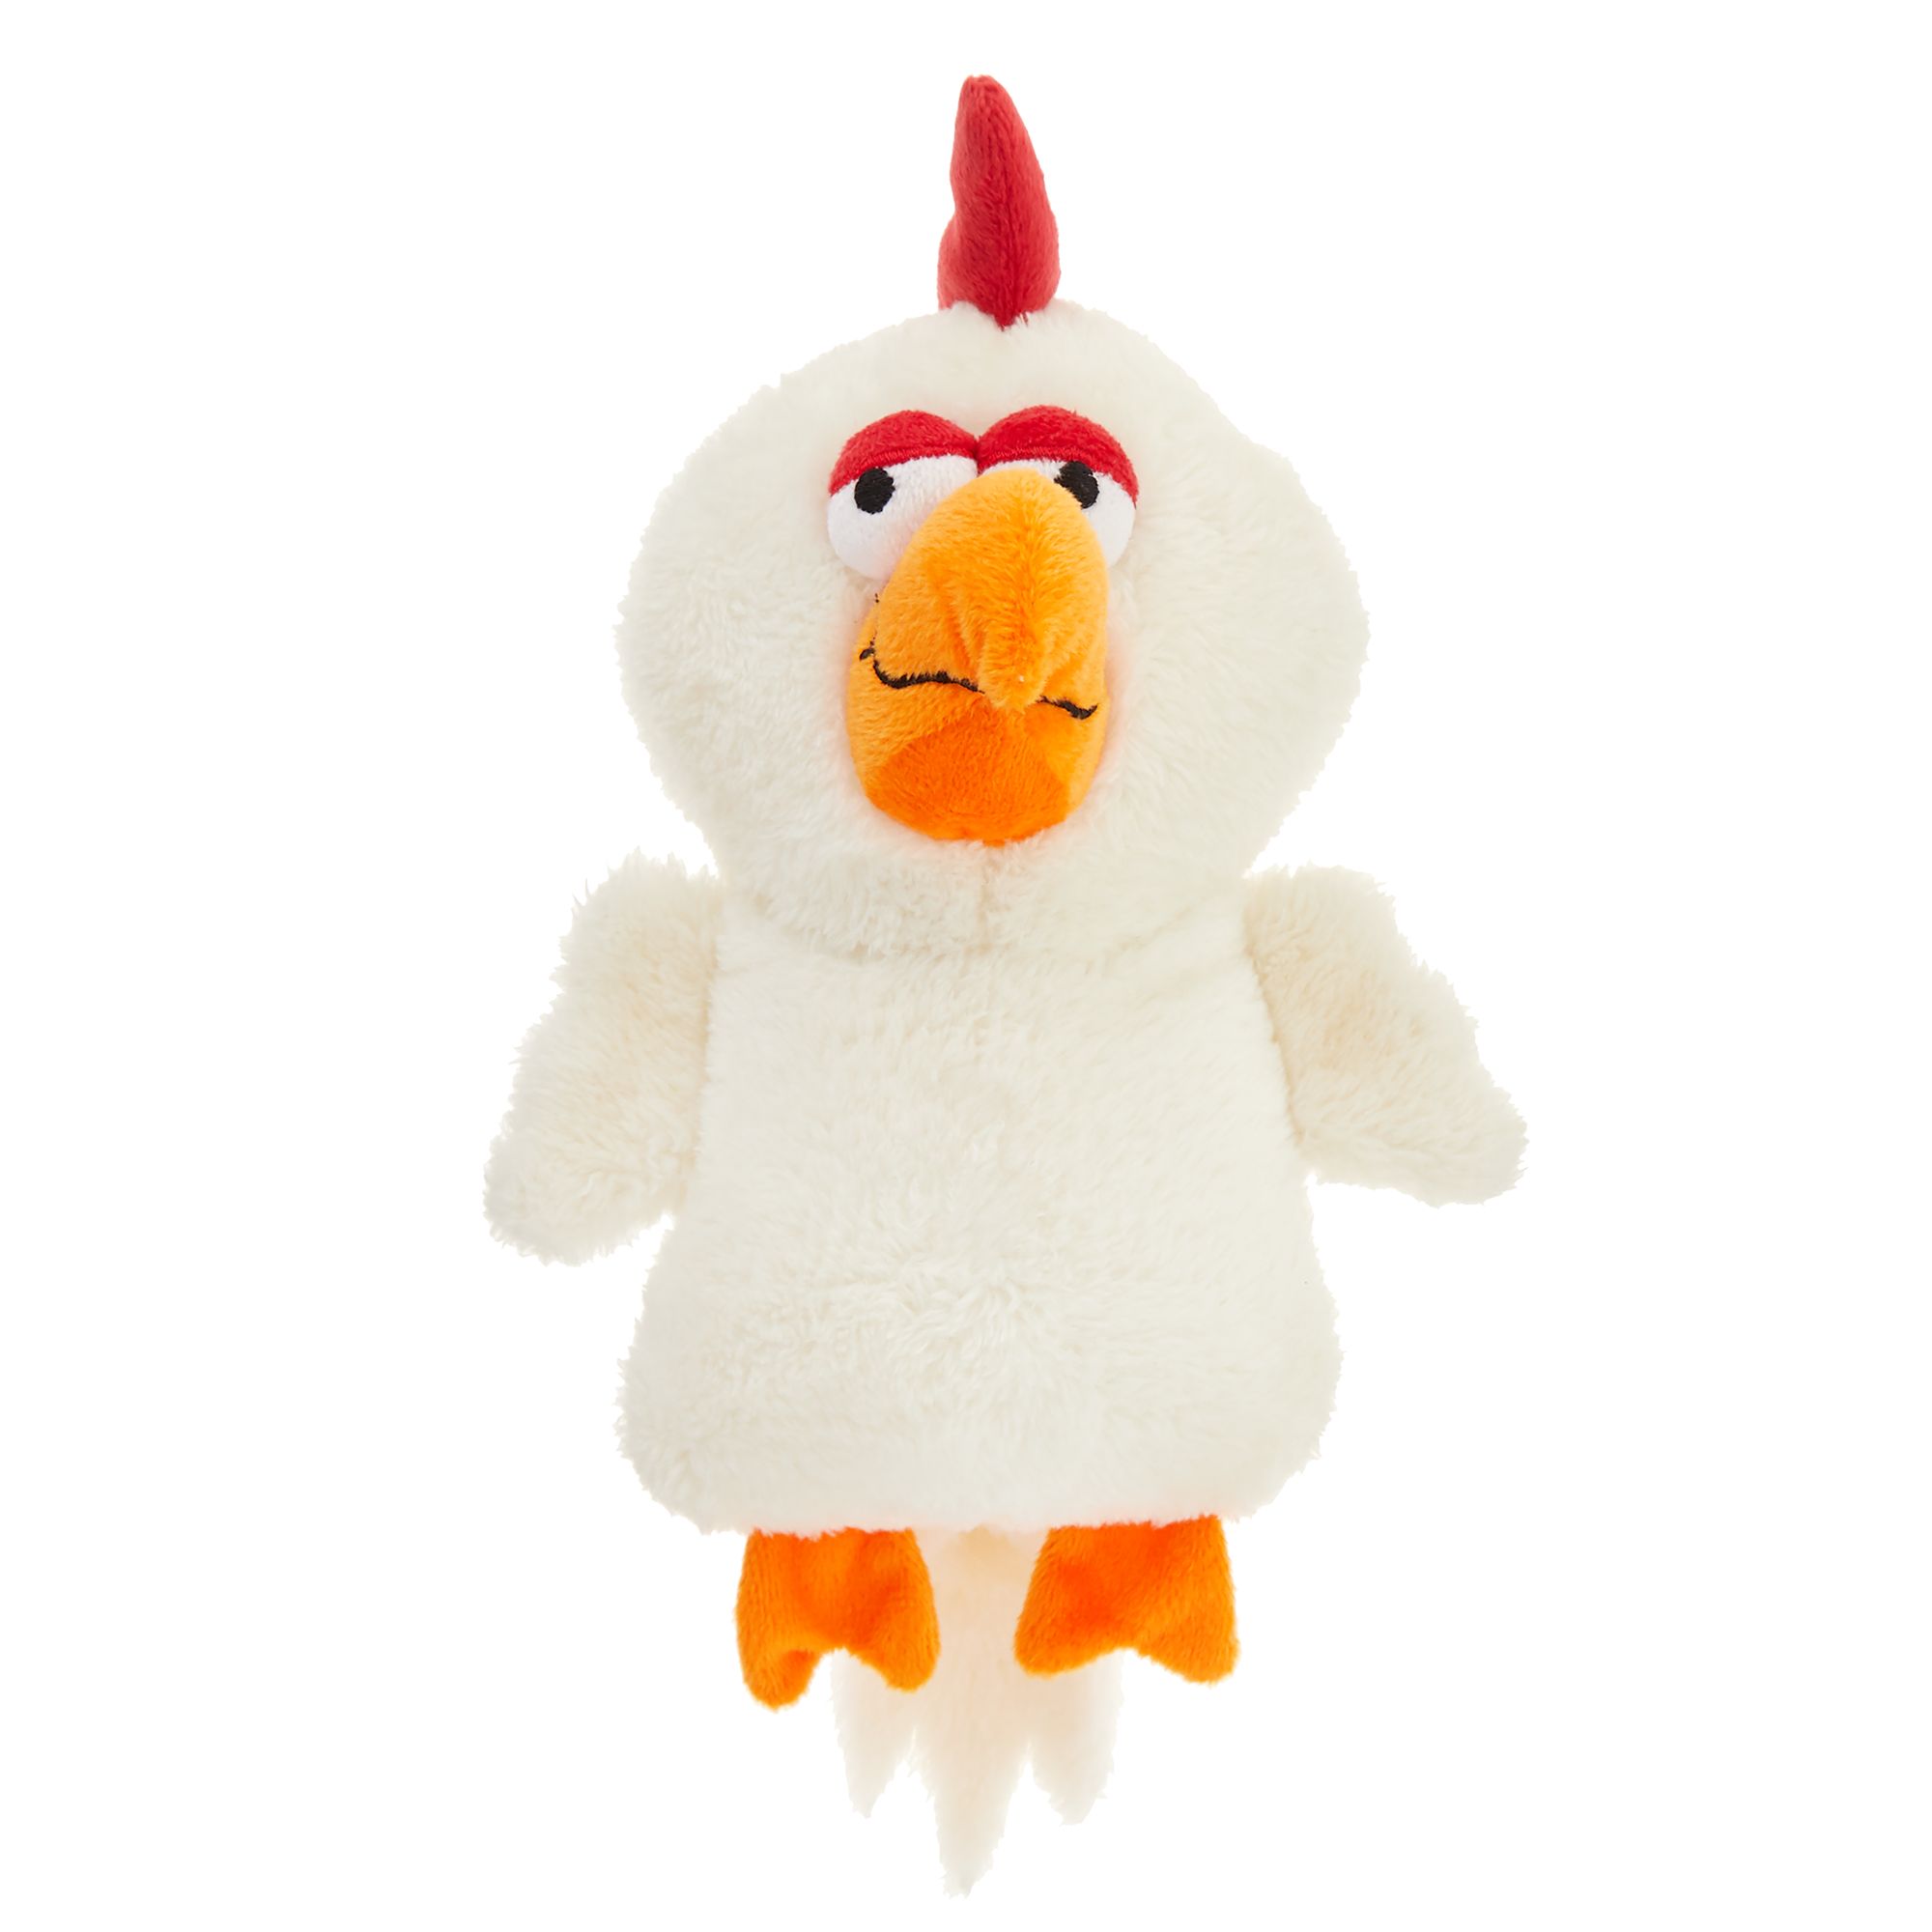 stuffed chicken toy